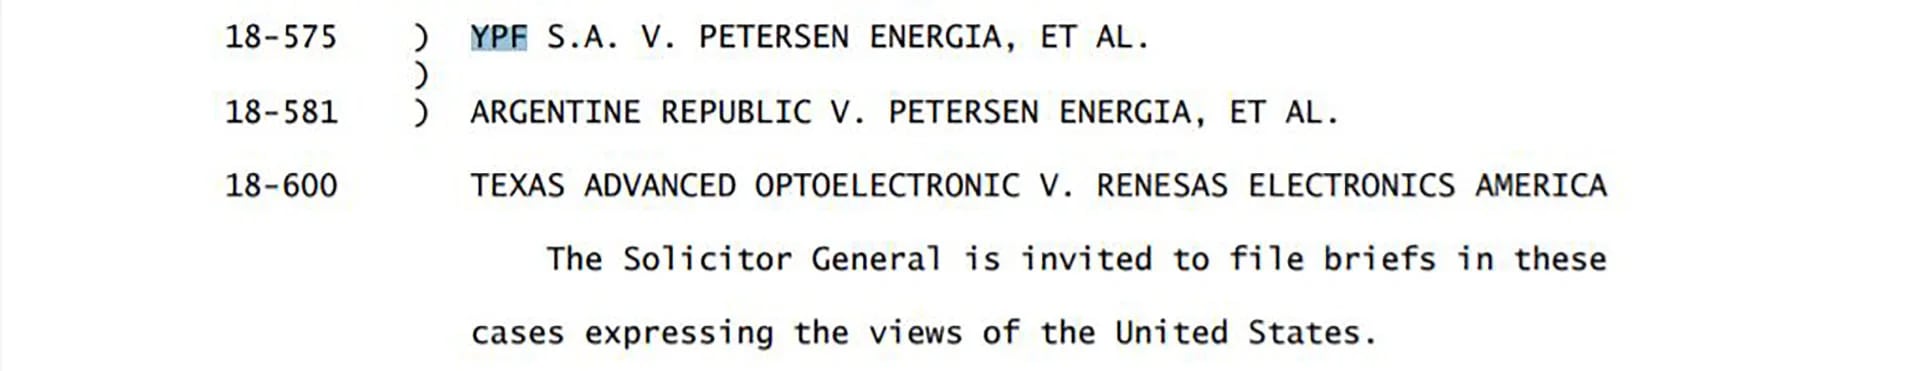 El extracto del “Order list” de hoy de la Corte Suprema de EEUU donde se menciona la demanda contra el país